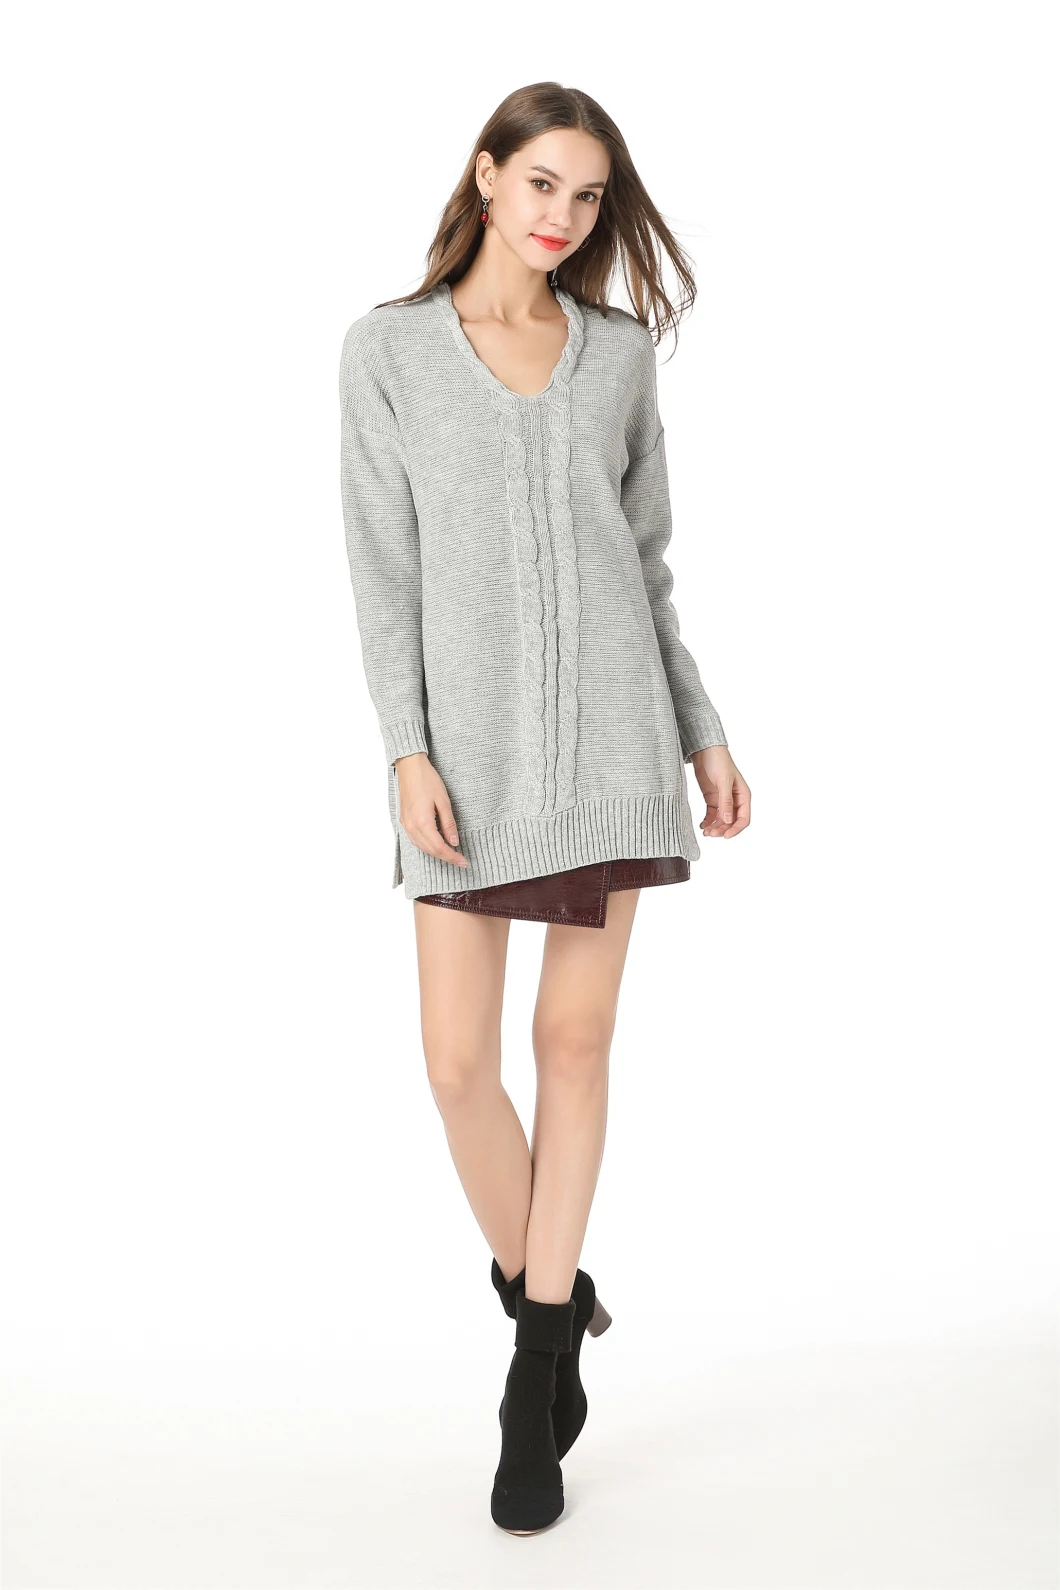 Vネックミッドレングスニットウェアオーバーサイズの衣服の女性プルオーバーセーター